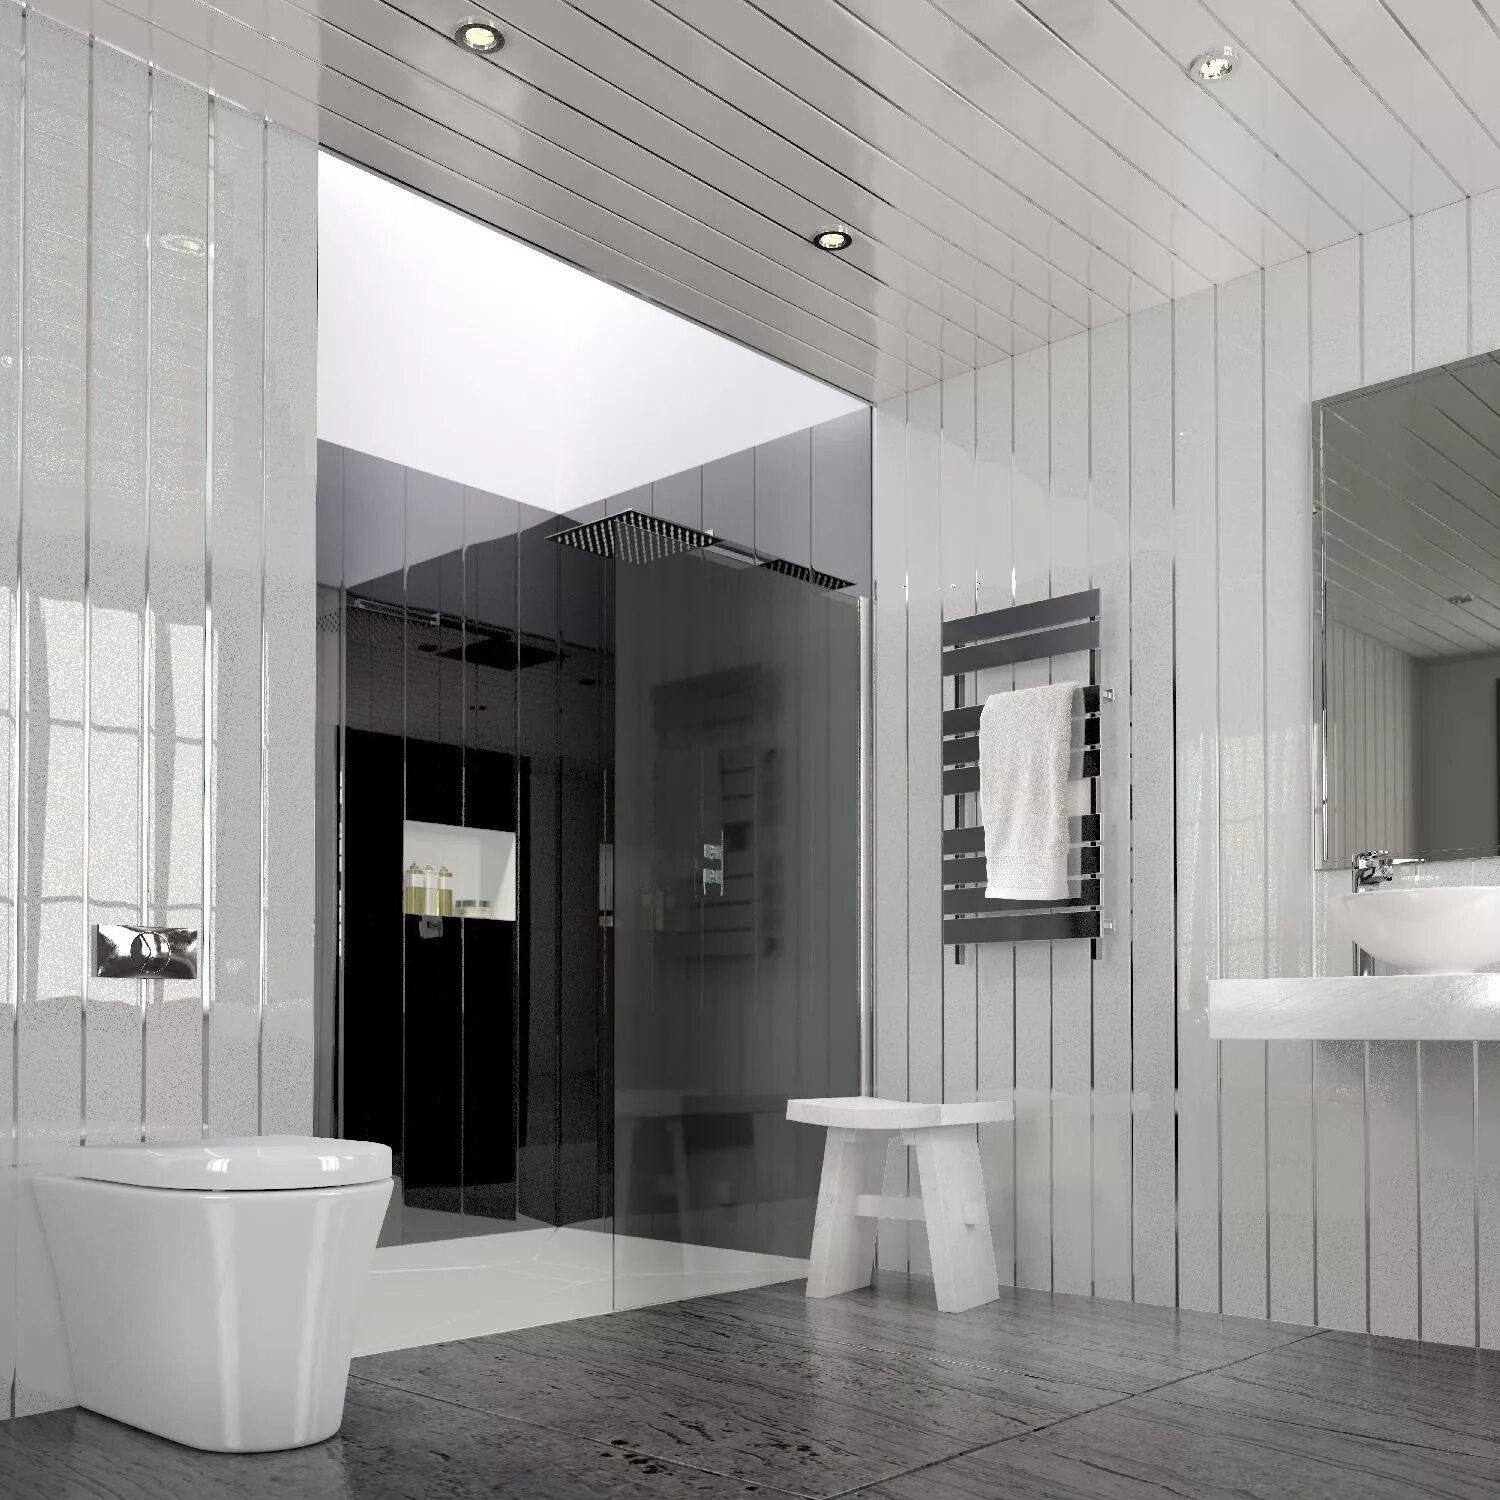 Панельная ванная комната. Ванная с белыми панелями. Ванная комната обшитая белыми панелями. Ванная отделанная пластиком. Ванная комната из пластиковых панелей.